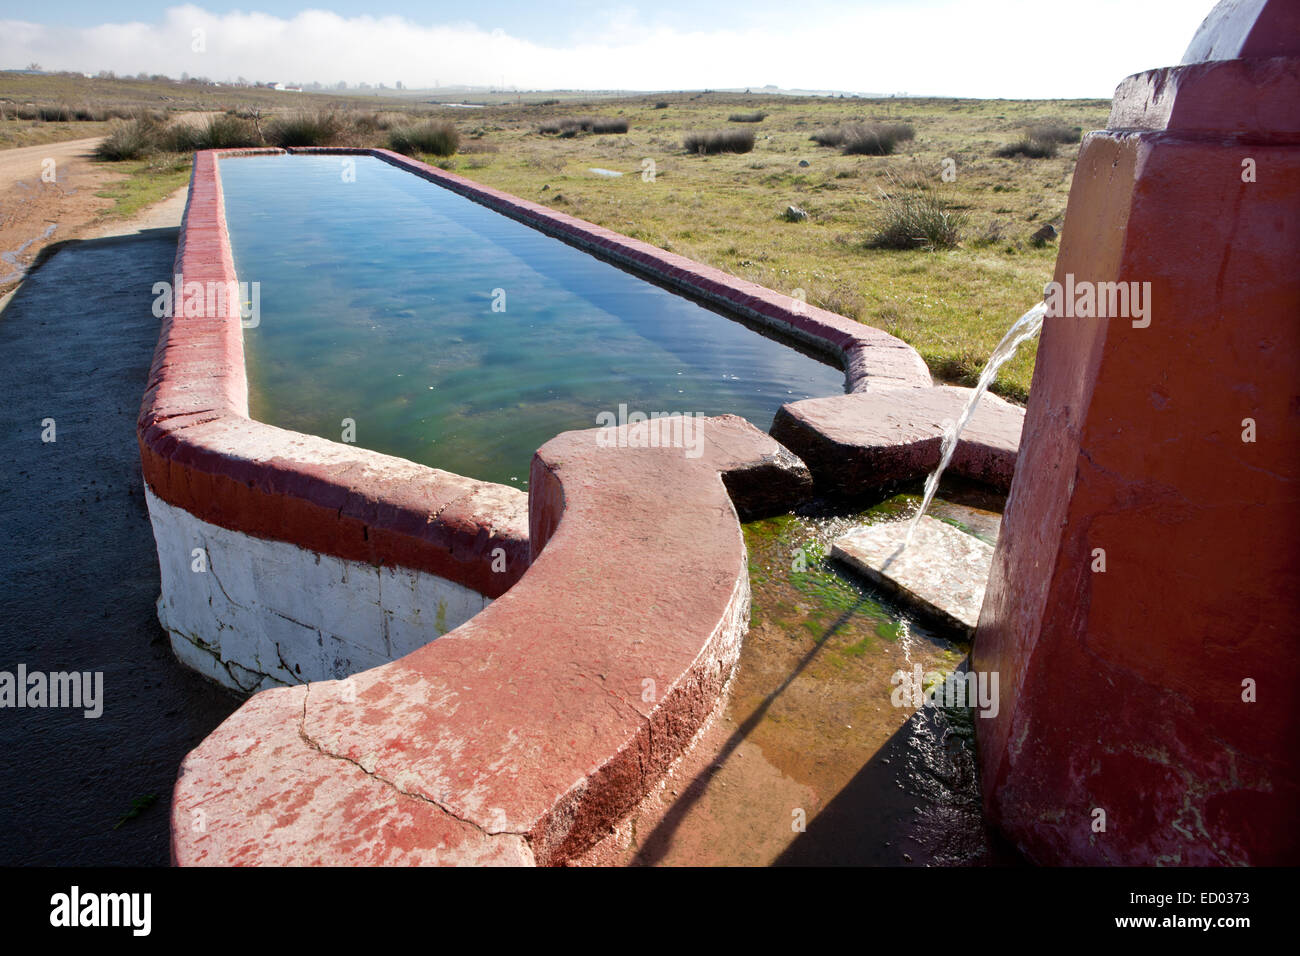 Fontaine bassin rural et avec des conteneurs pour des fins d'élevage en agriculture, Espagne Banque D'Images